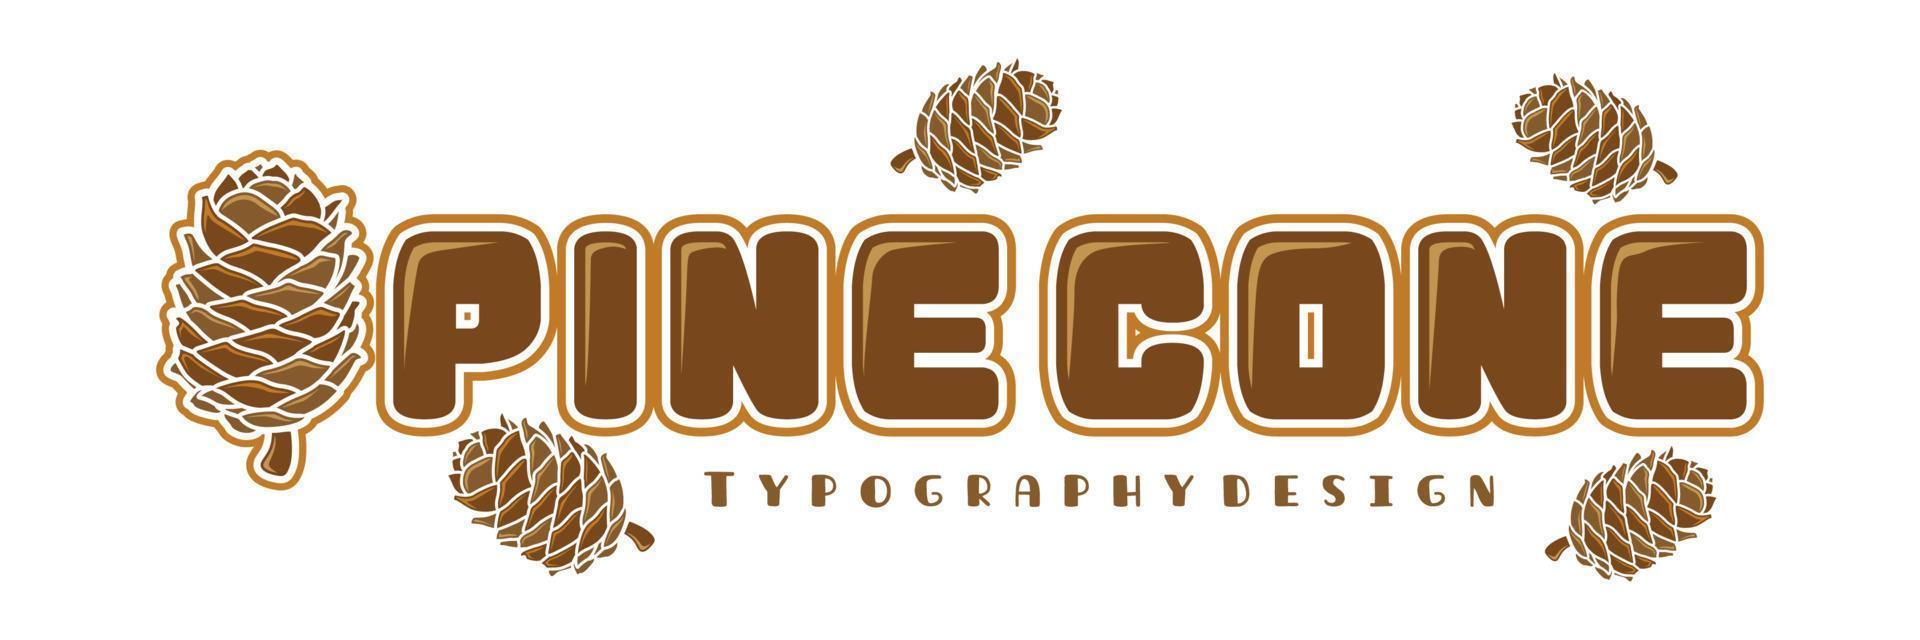 typographie pomme de pin avec icône pomme de pin pour logo naturel ou extérieur vecteur